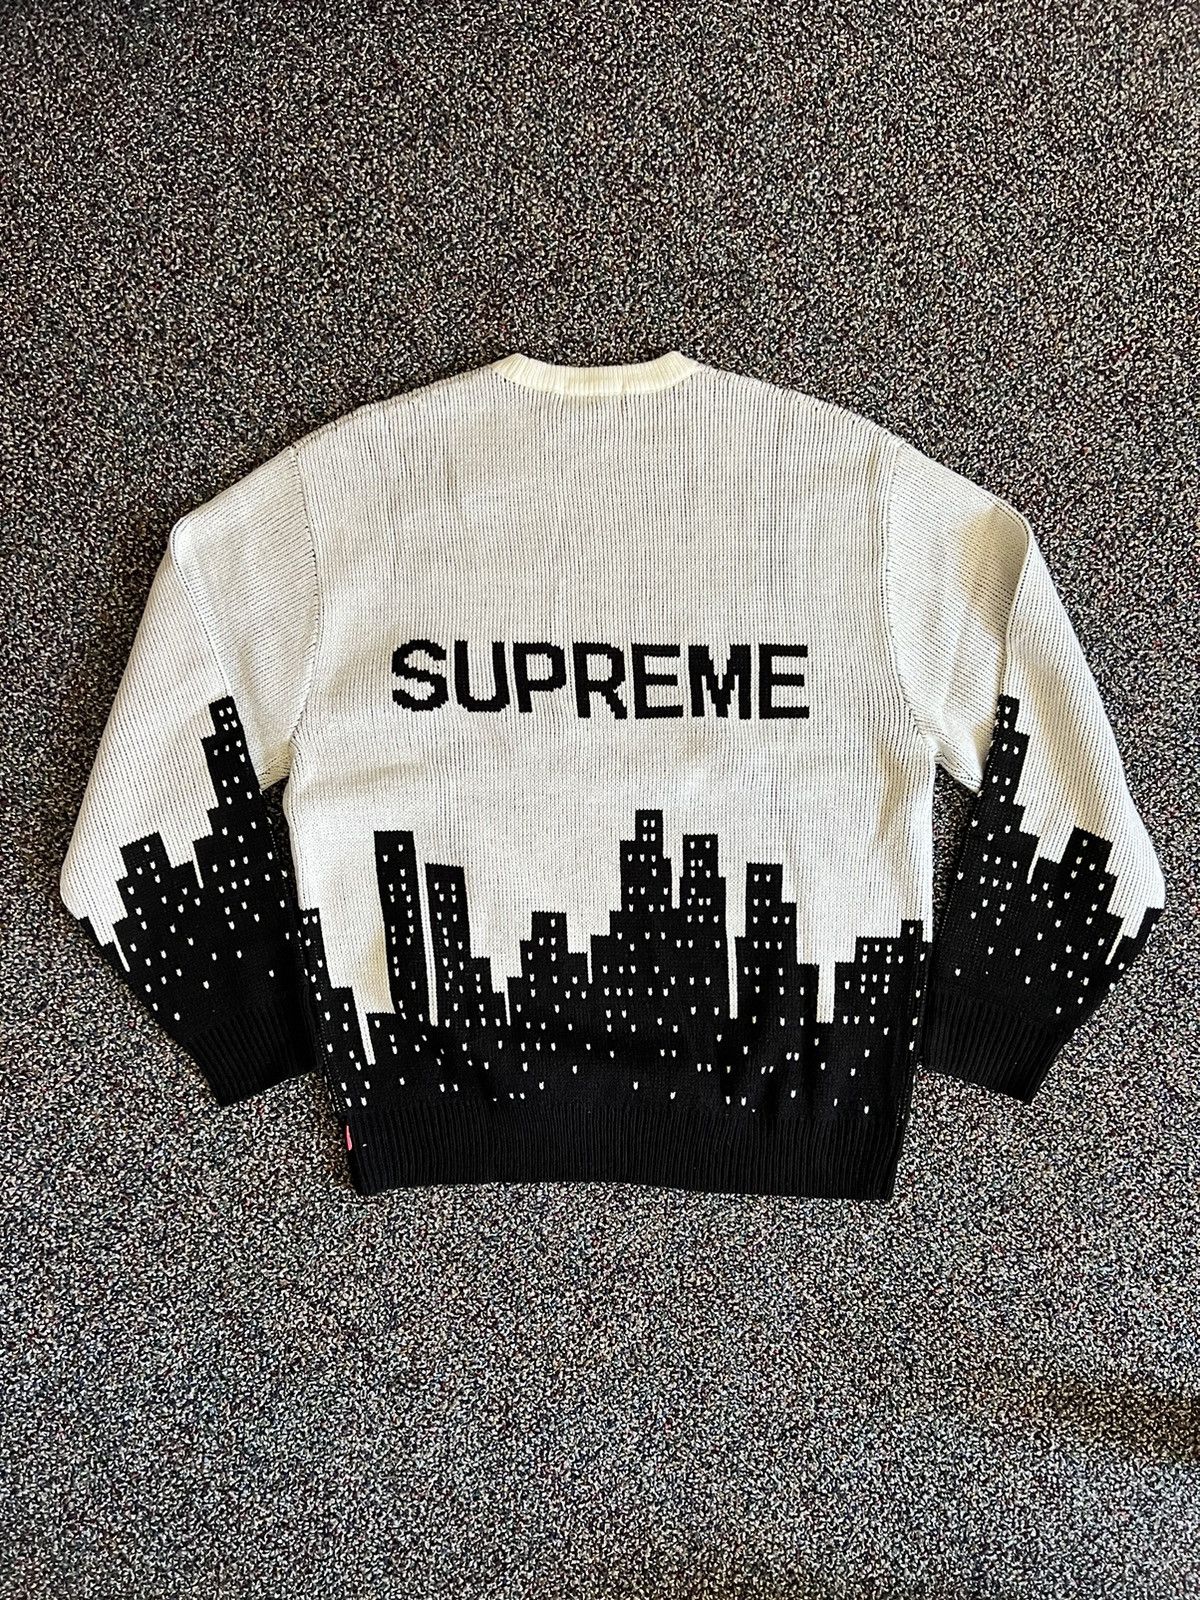 Supreme Supreme New York Sweater | Grailed